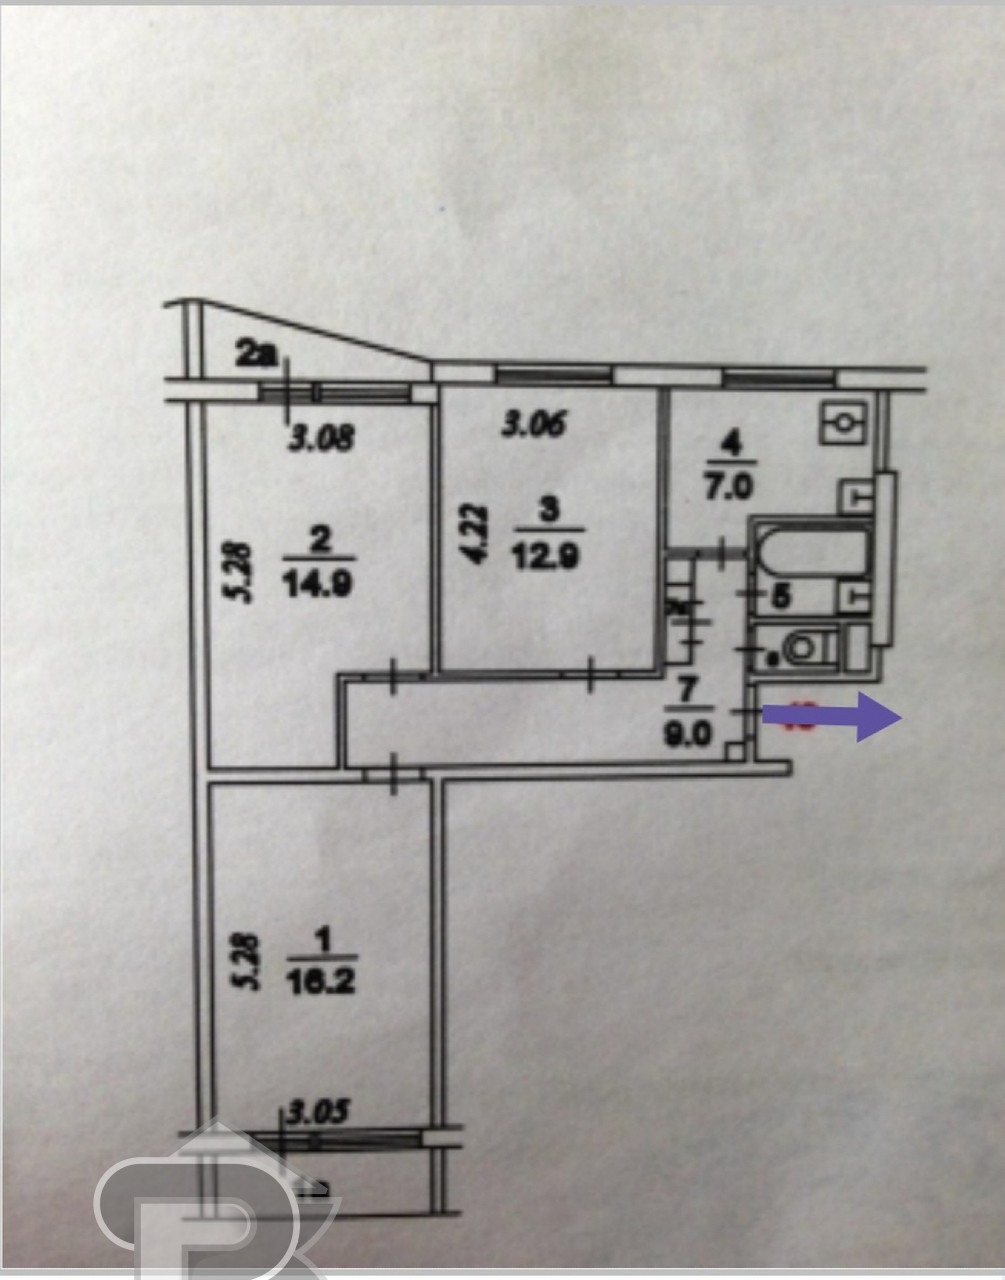 3к кв. Планировка 3х комнатной квартиры в панельном доме 9 этажей 61 метр. Панельная трешка II 57. II-57 планировка. План 3 комнатной квартиры в панельном доме 9 этажей.